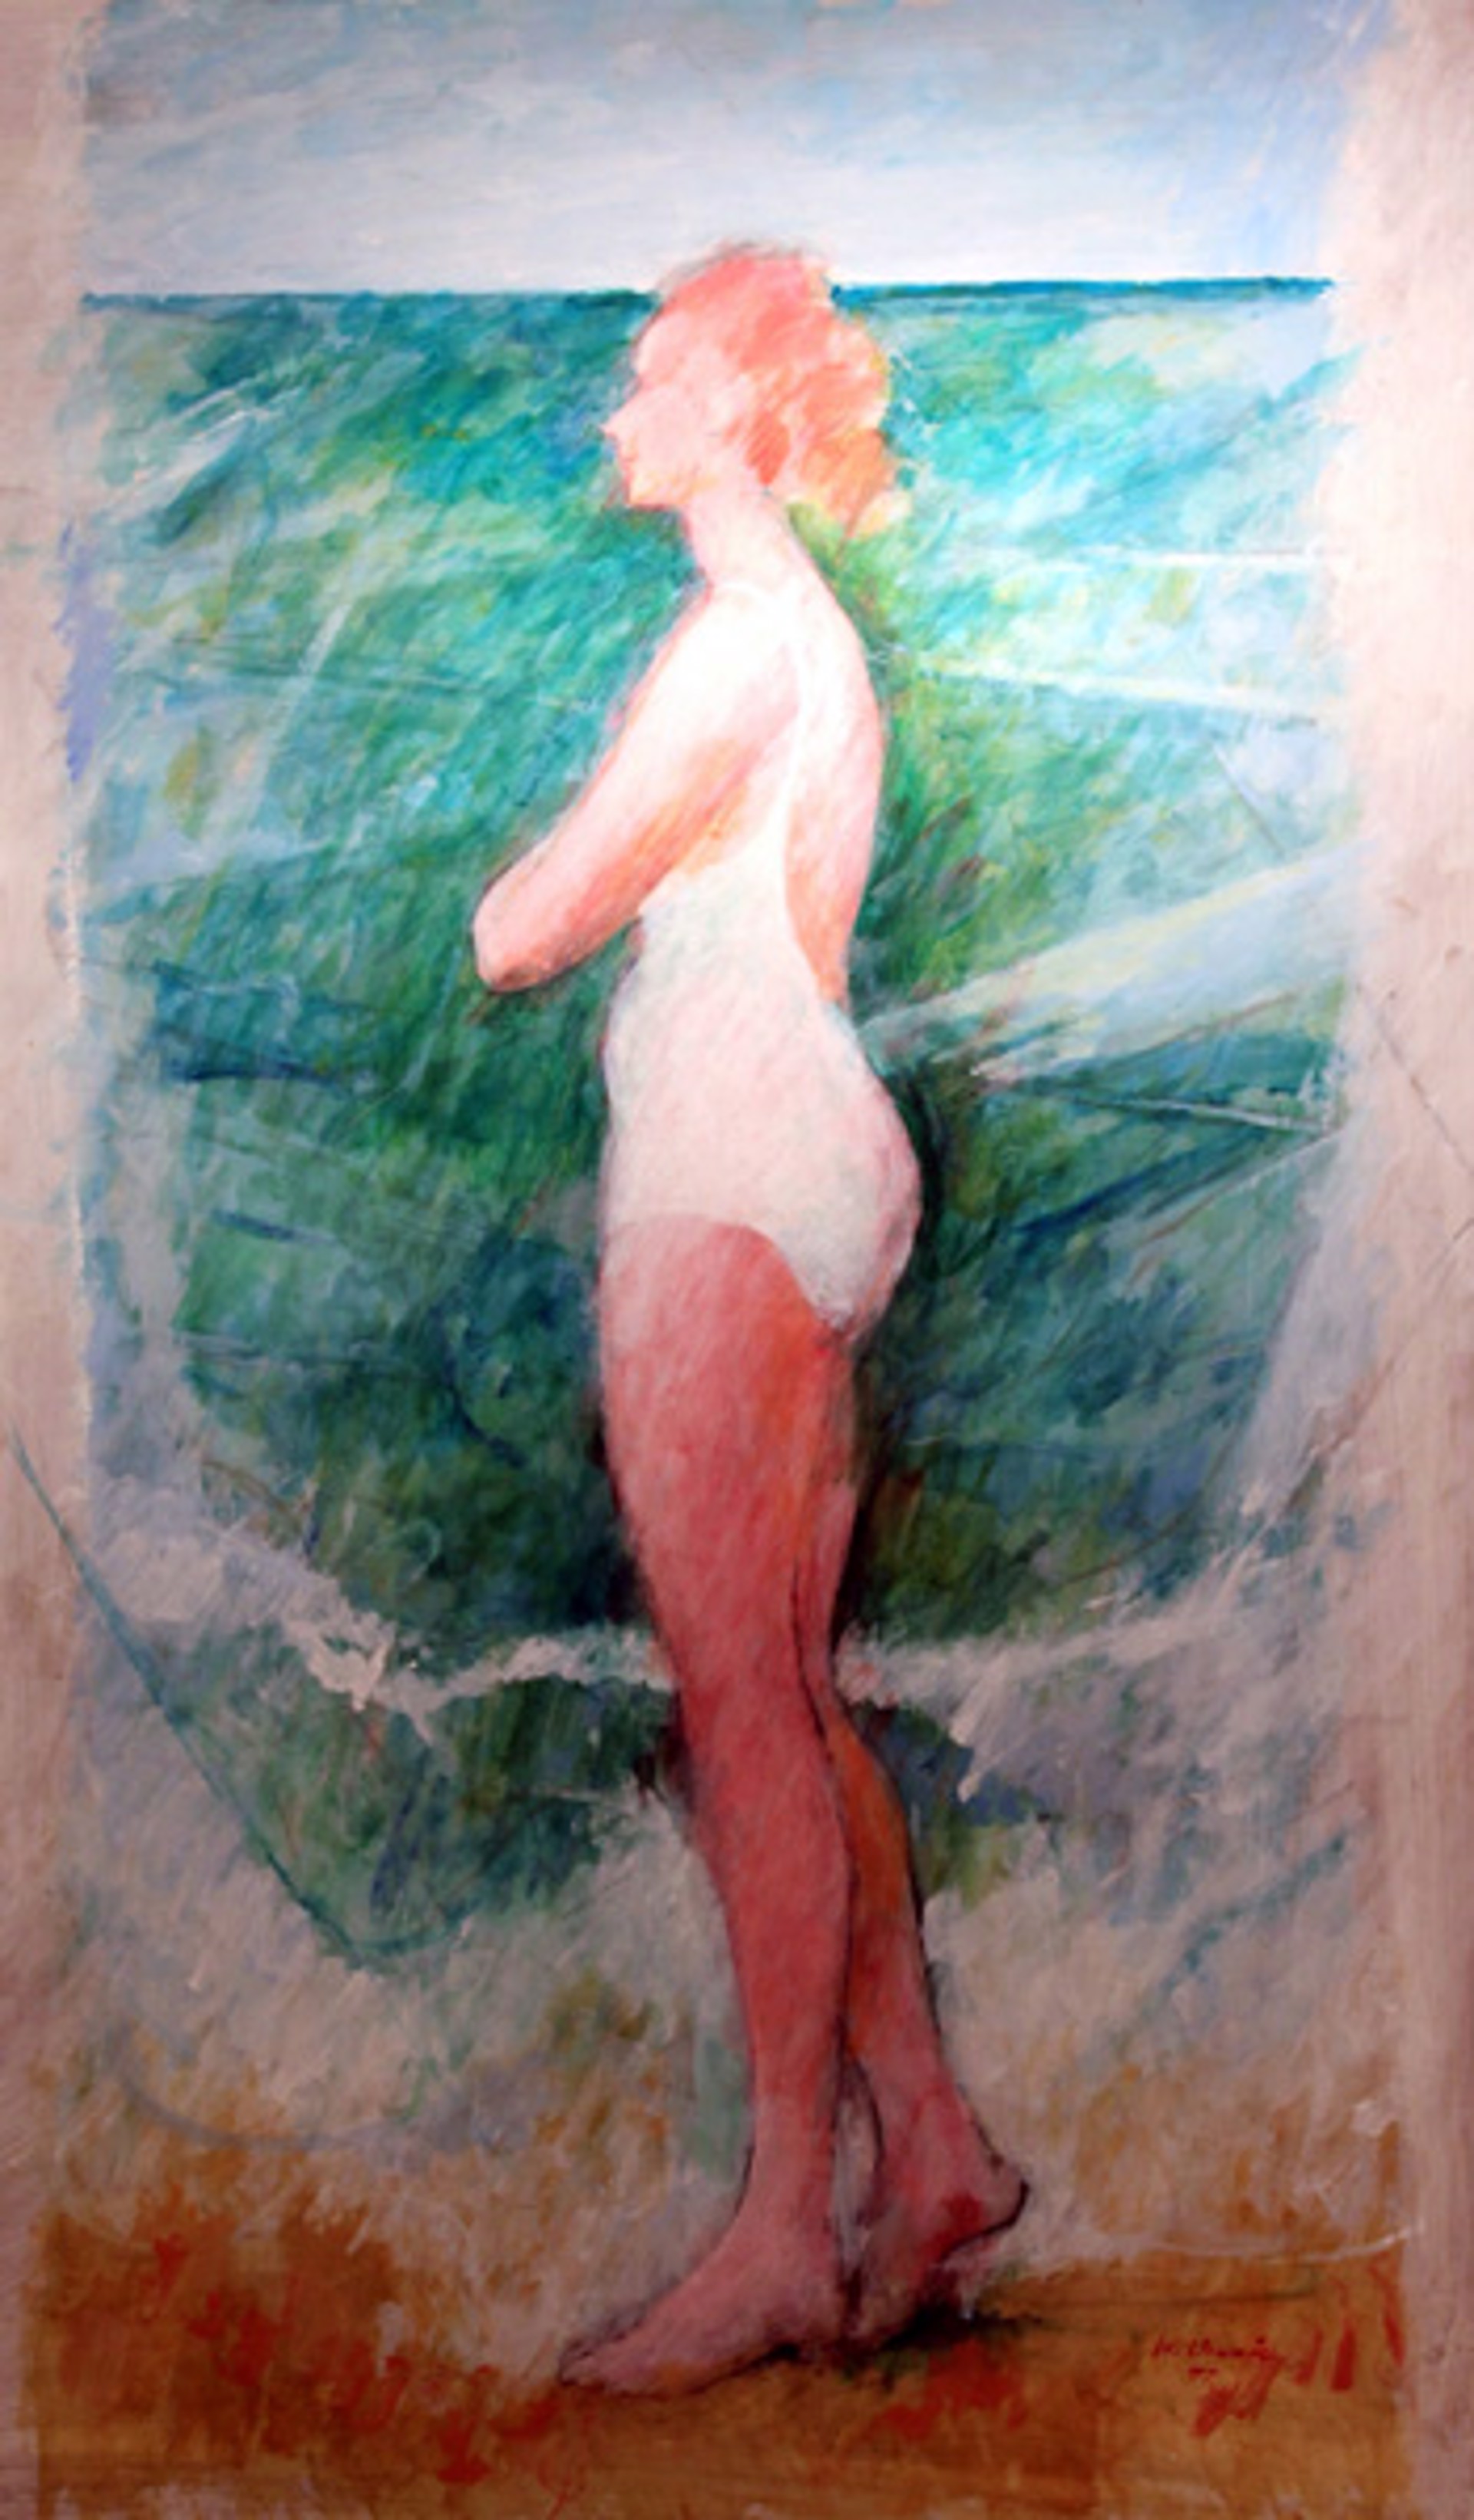 Woman In The Waves by Warren Dennis